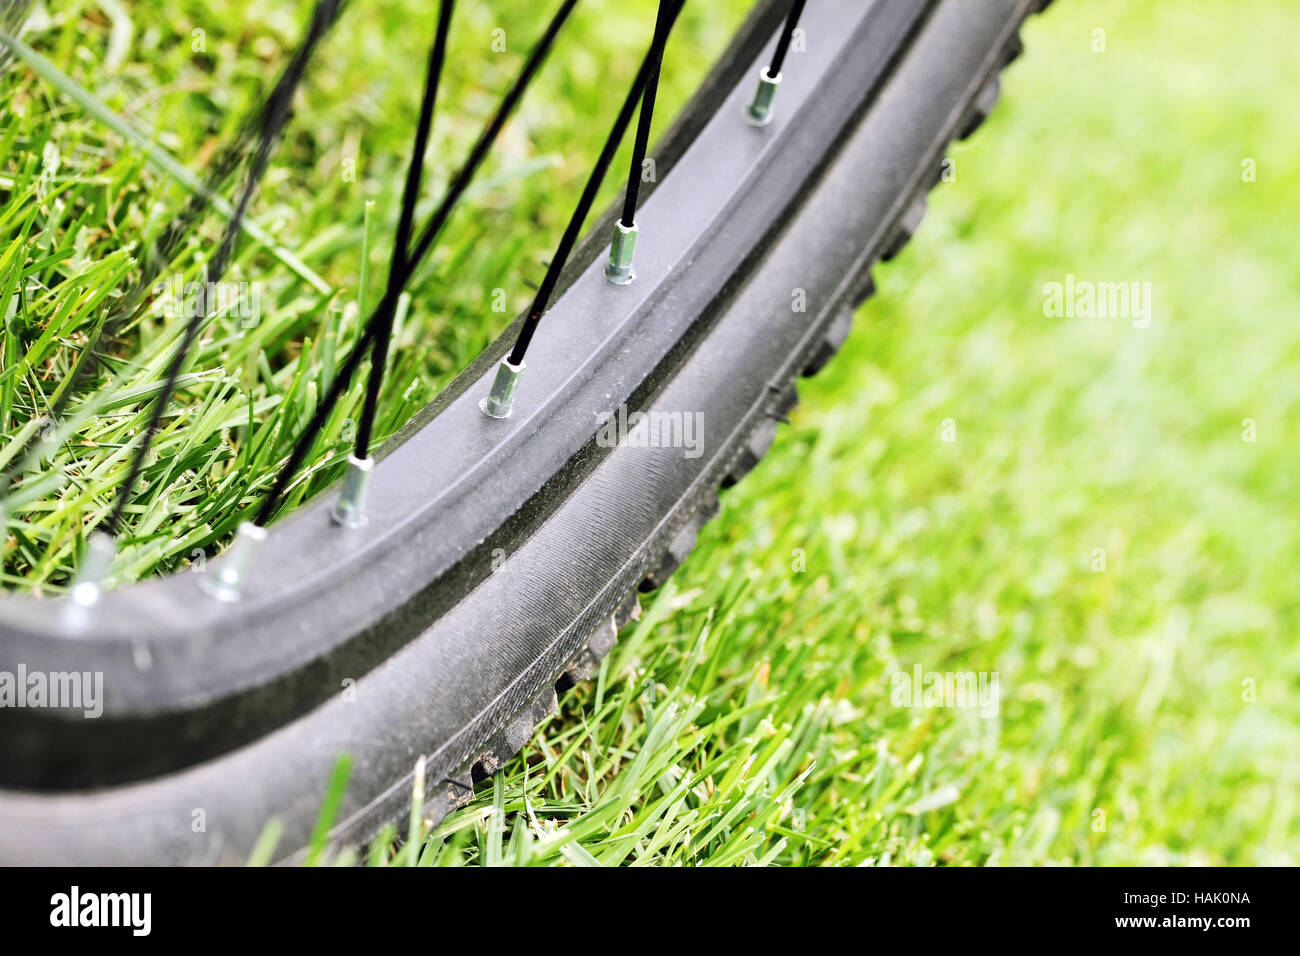 Cerca de la rueda de la bicicleta sobre la hierba verde en la luz del sol Foto de stock